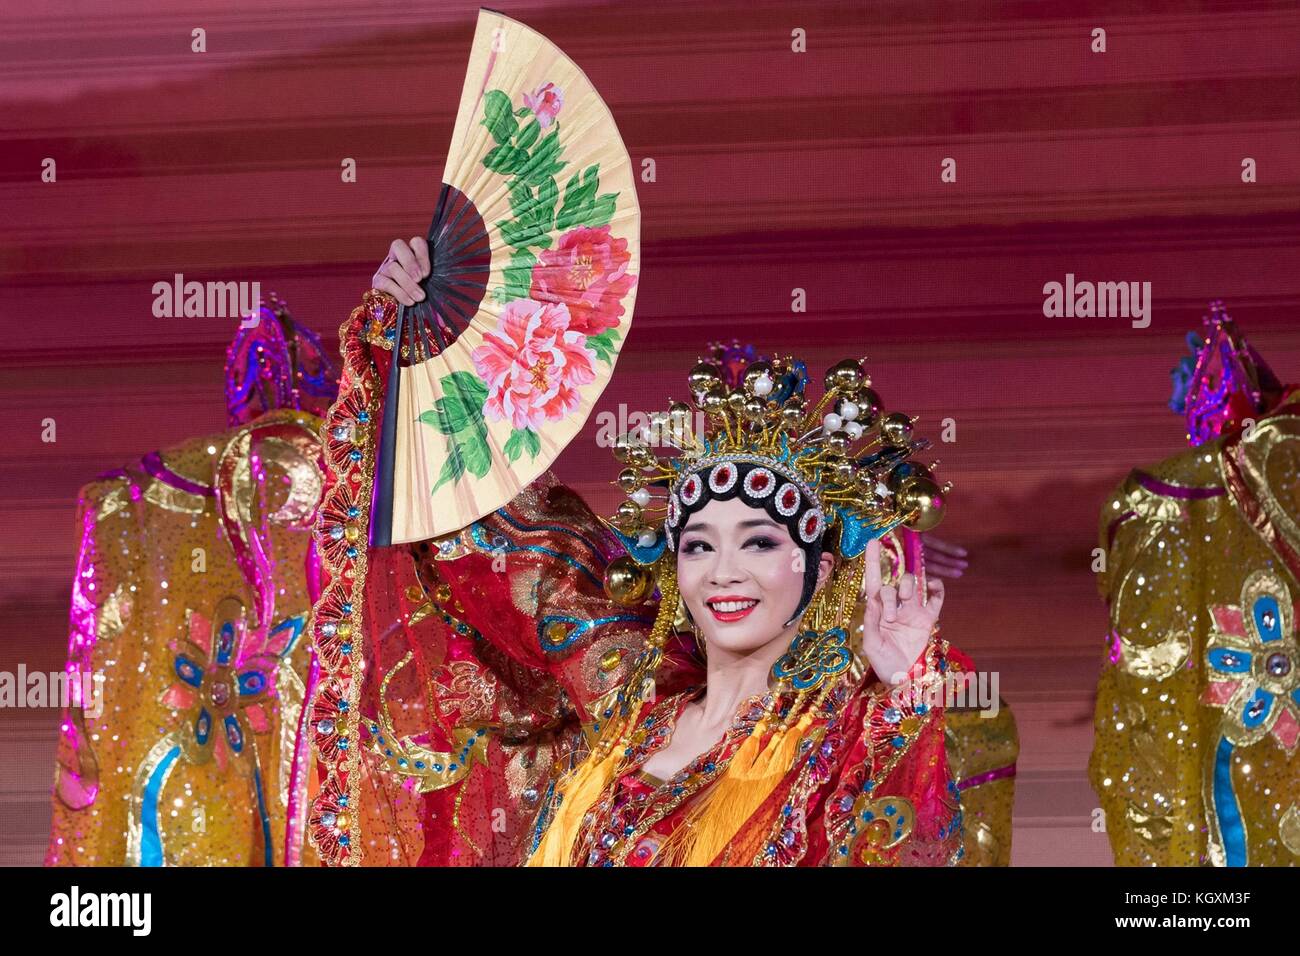 Les artistes traditionnels chinois au cours de la partie divertissement du dîner d'état de président américain Donald Trump, accueilli par le président chinois Xi Jinping, le 9 novembre 2017, à Pékin, en Chine. trump est le troisième volet d'un swing de 13 jours à travers l'Asie. Banque D'Images